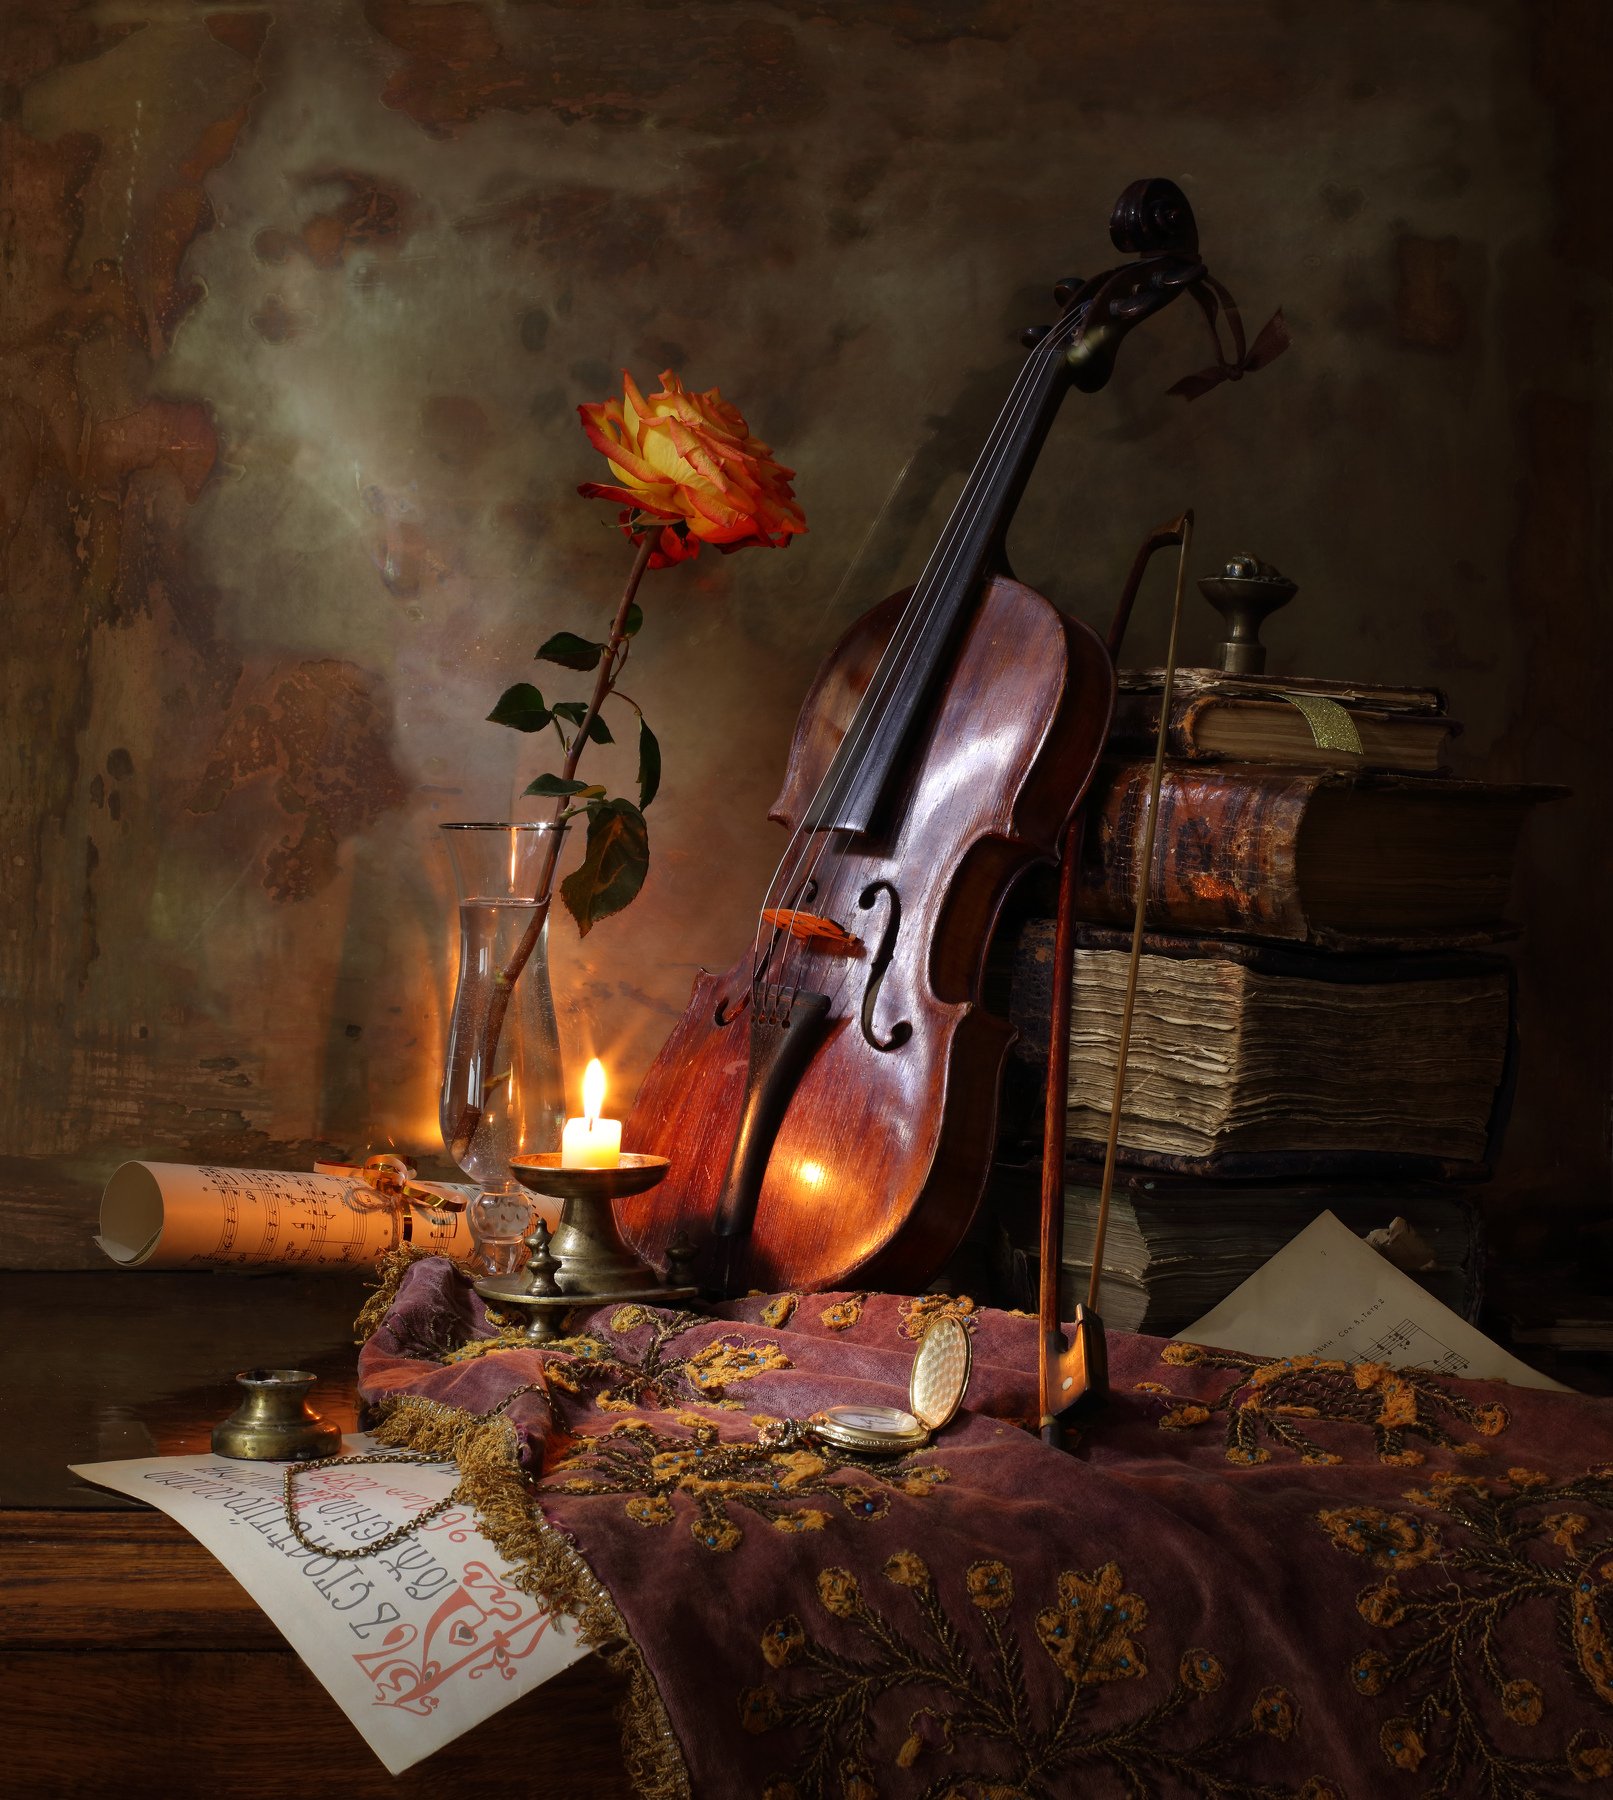 скрипка, роза, музыка, свеча, книги, свет, Андрей Морозов